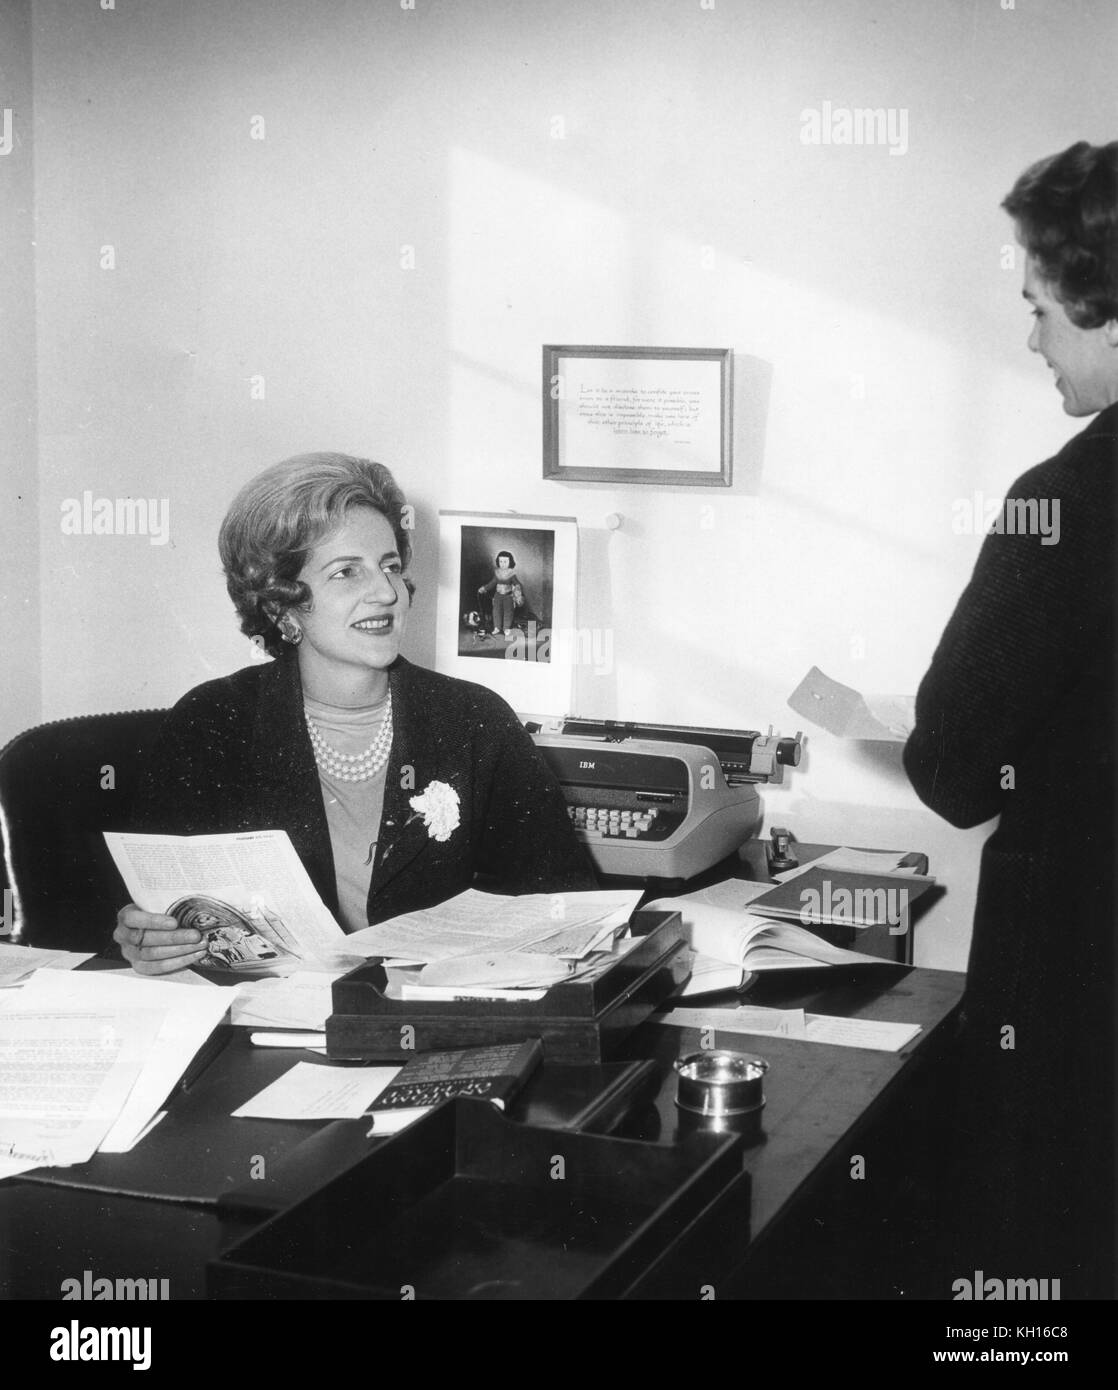 Letitia Baldrige (1926-2012), Jacqueline Kennedy Segretario sociale, è mostrato nella sua casa bianca office, Washington, DC, 03/02/1961. Foto di Abbie Rowe Foto Stock